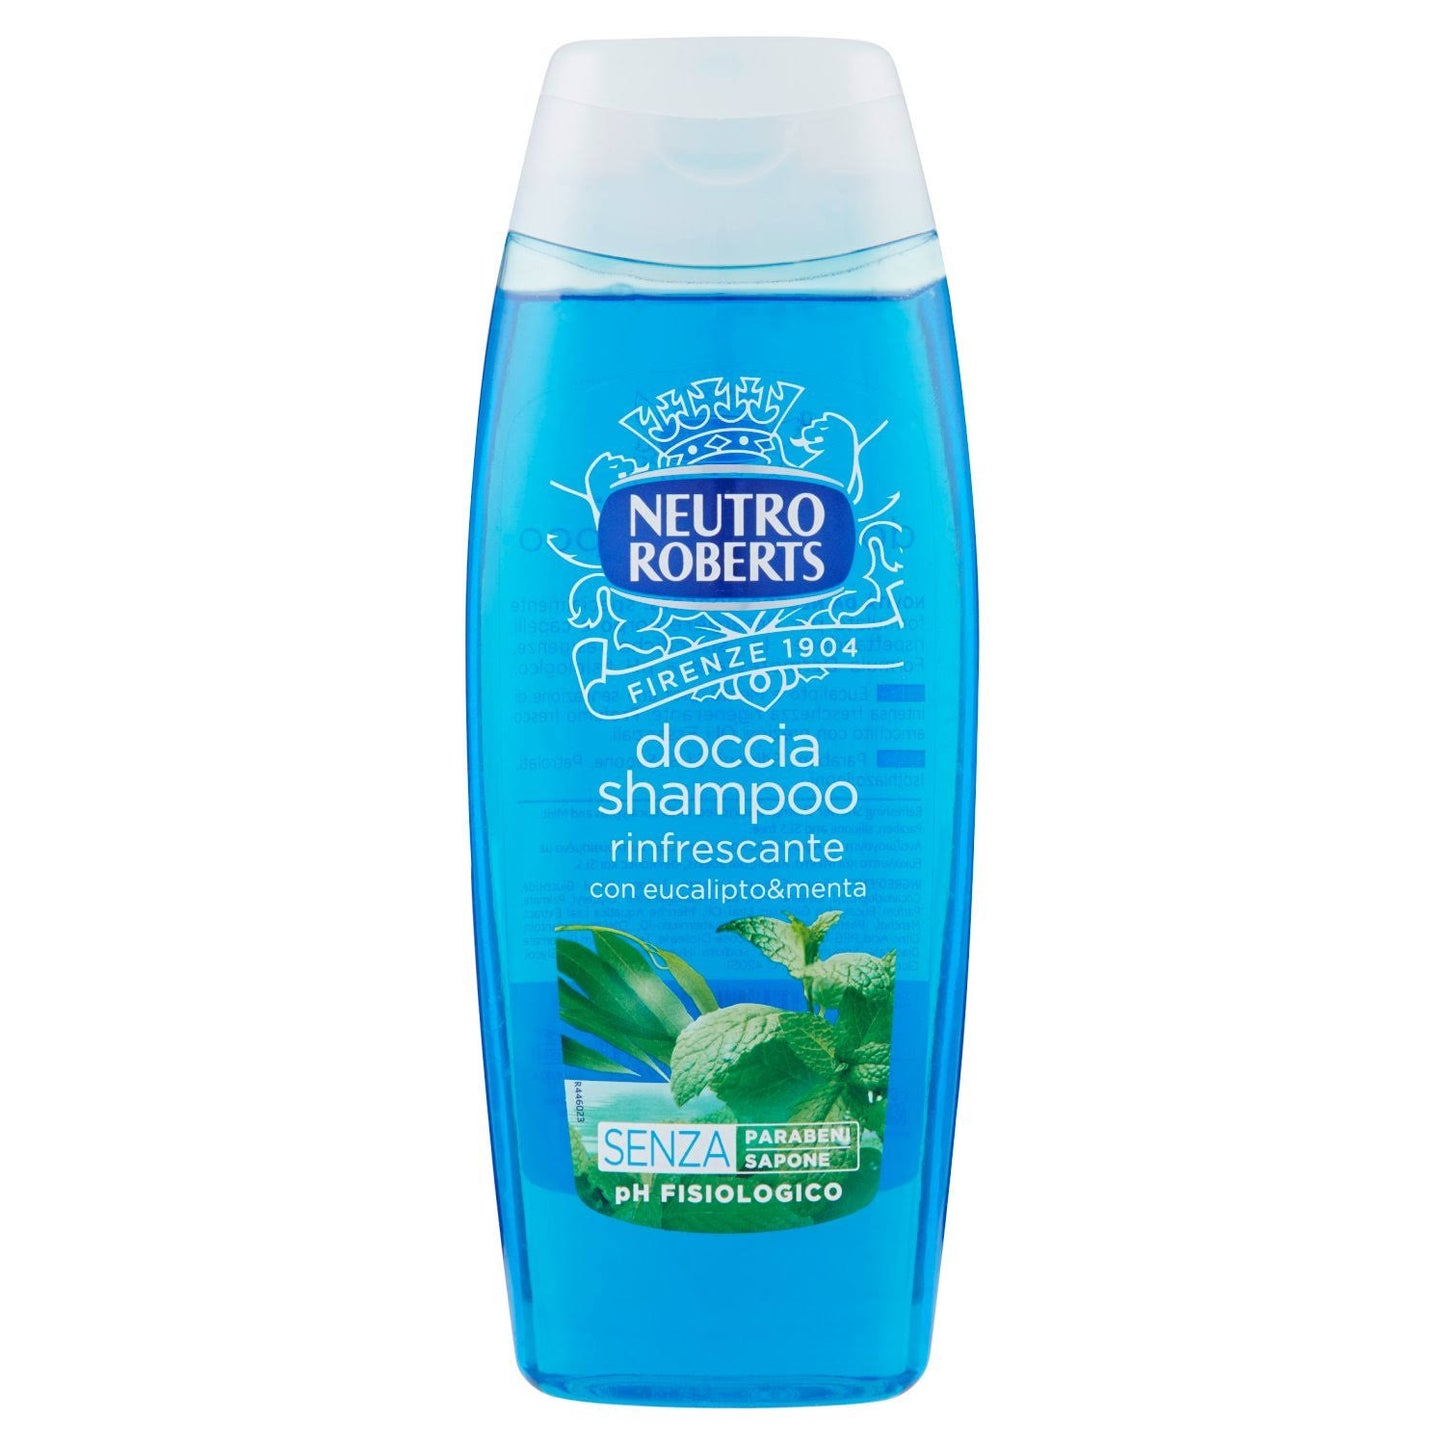 Neutro Roberts Shower Shampoo Refreshing 250ml 8.45 Fl.oz